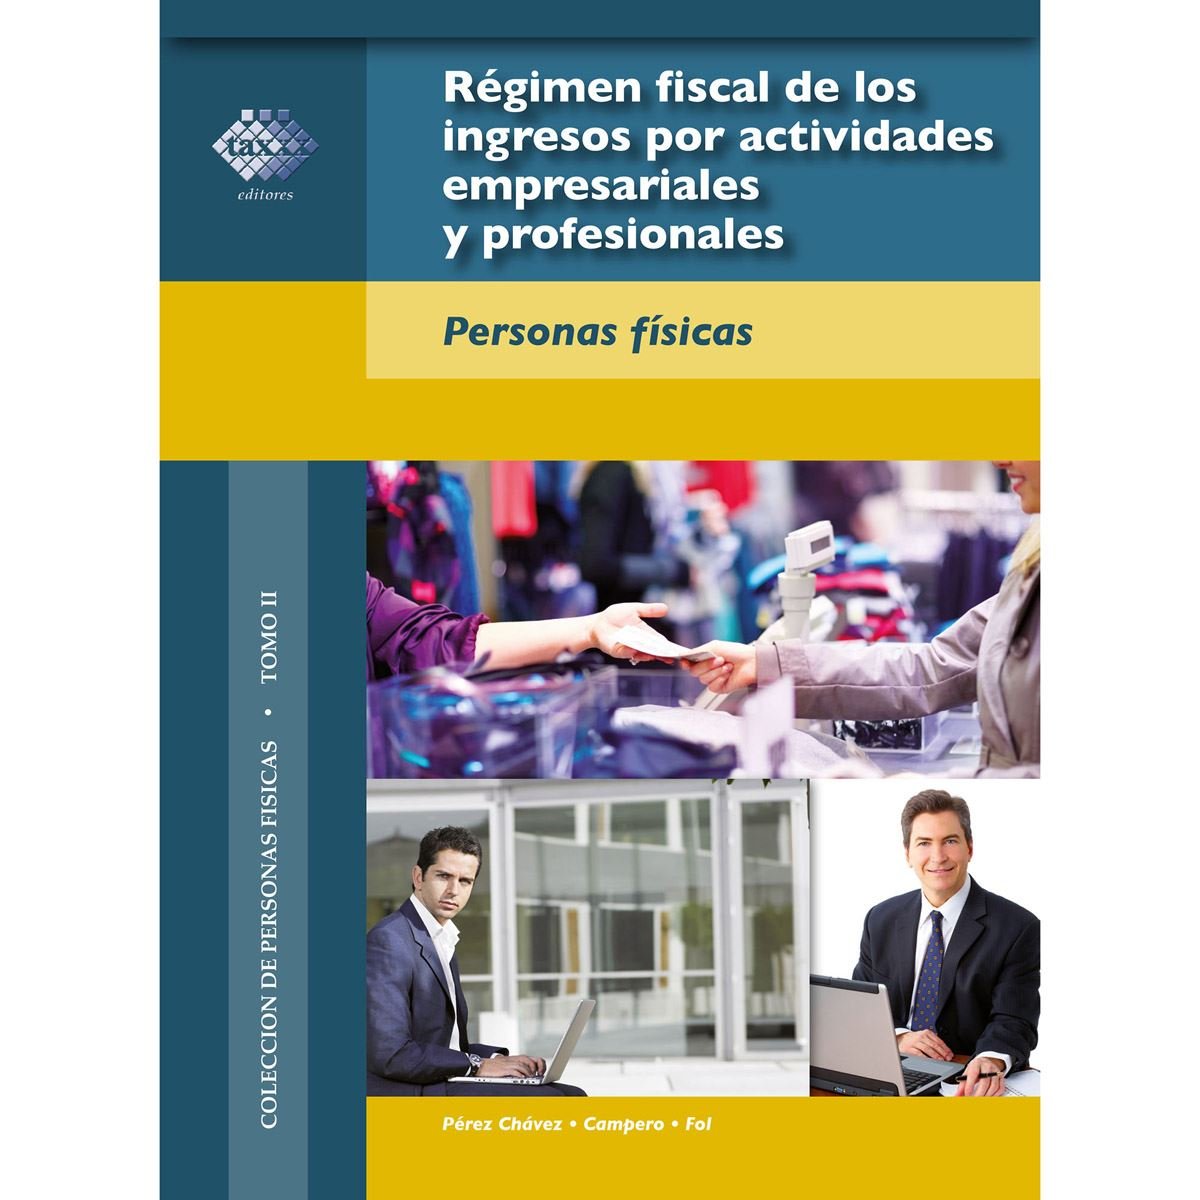 Régimen fiscal de los ingresos por actividades empresariales y profesionales. Personas físicas